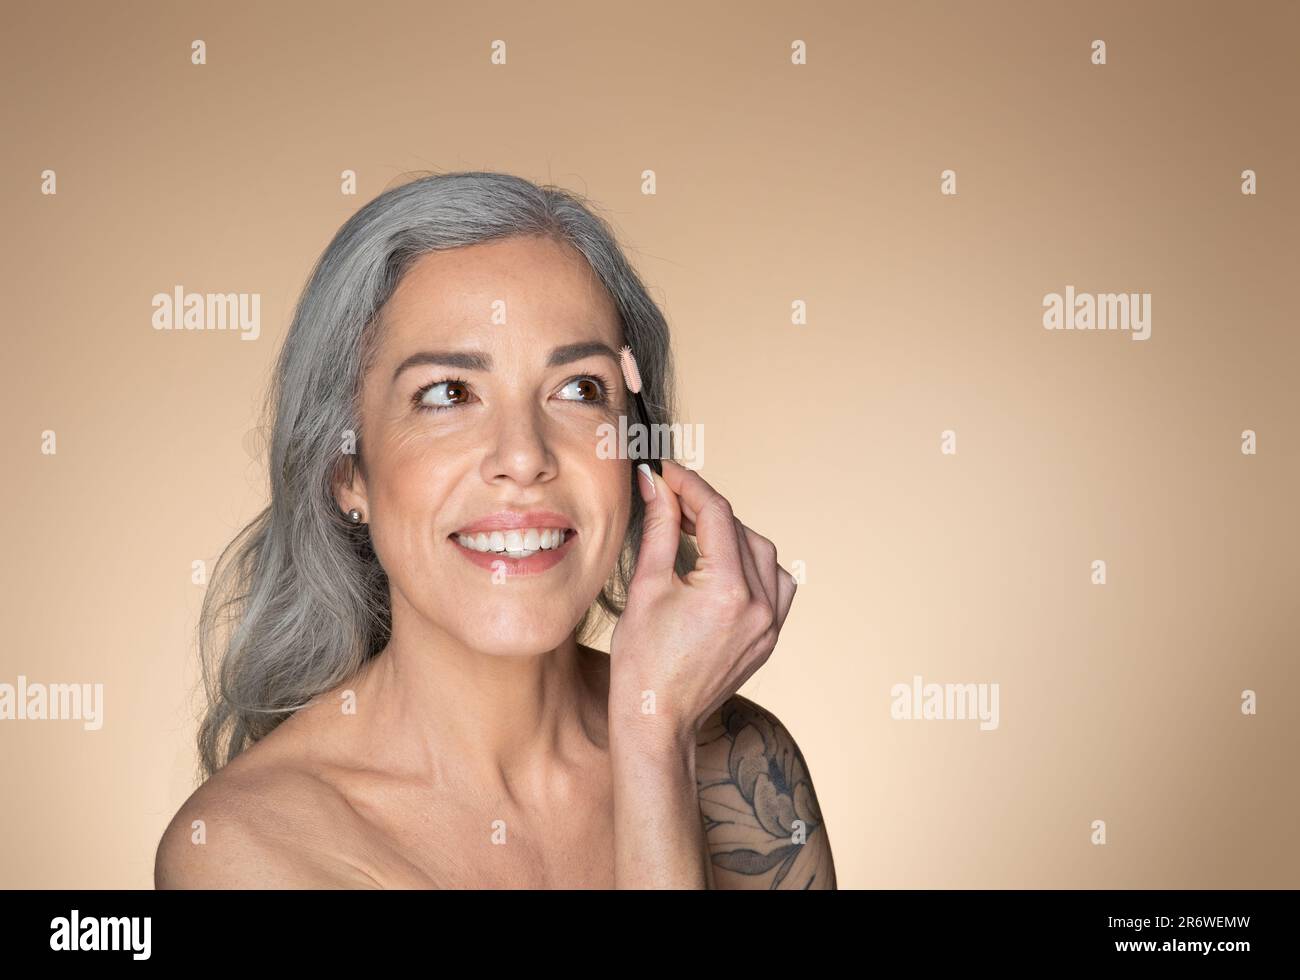 Glückliche grauhaarige ältere Frau, die die Augenbrauen mit Bürste putzt und lächelt, Schönheitsbehandlungen und Kosmetikprodukte genießt Stockfoto